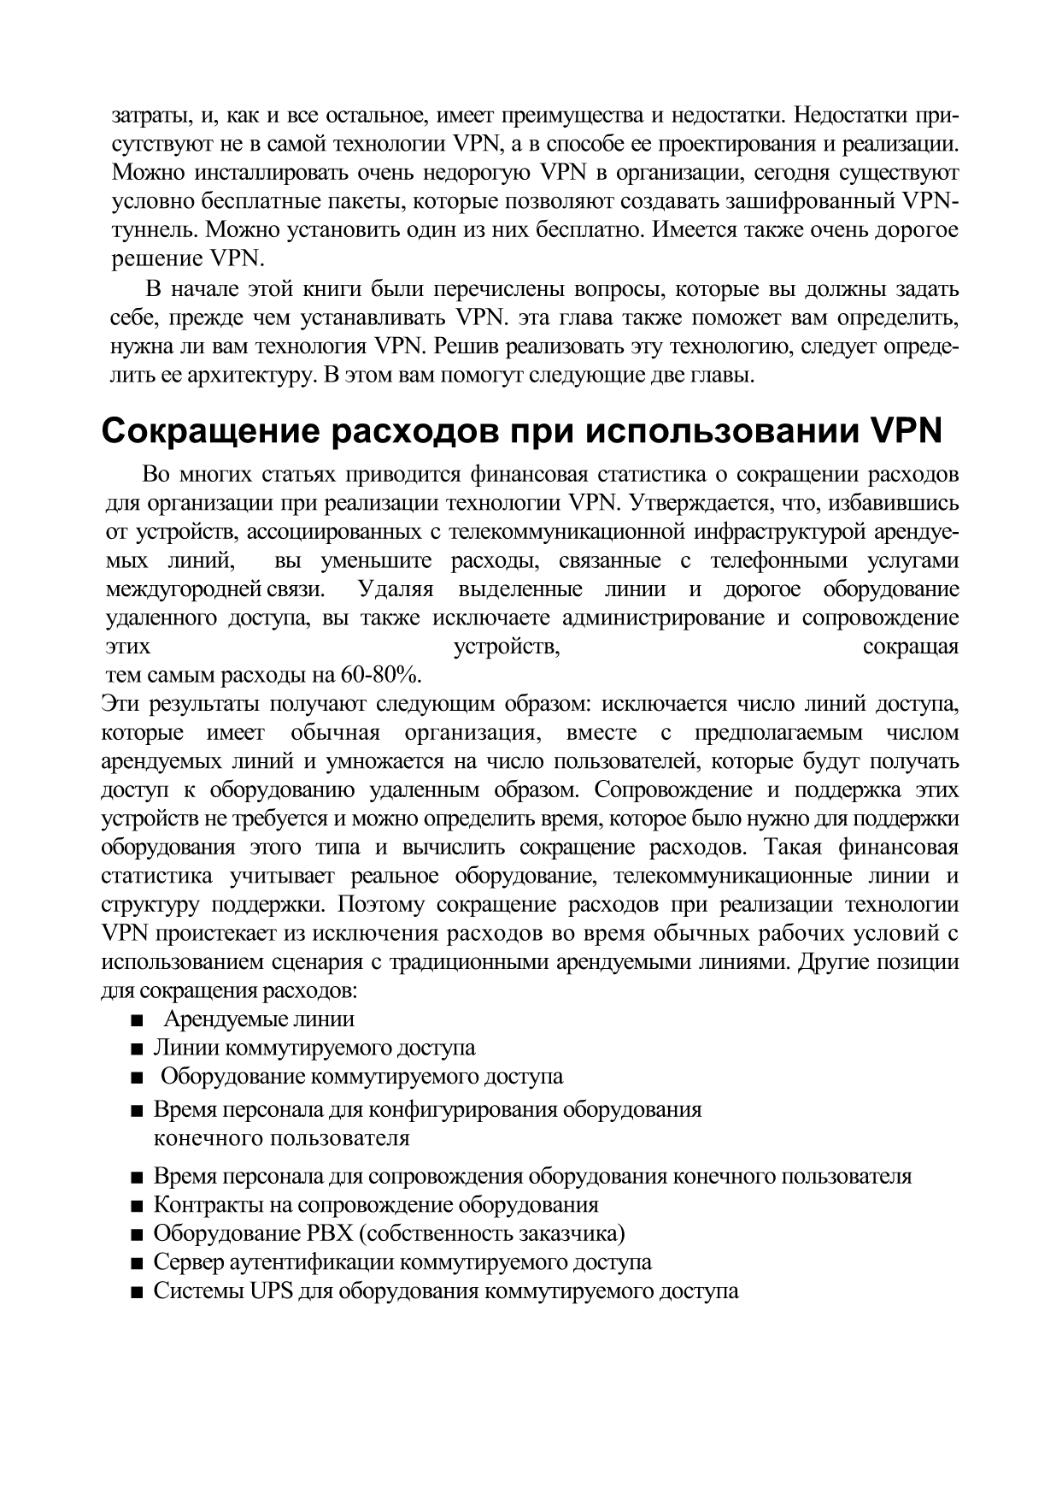 Сокращение расходов при использовании VPN